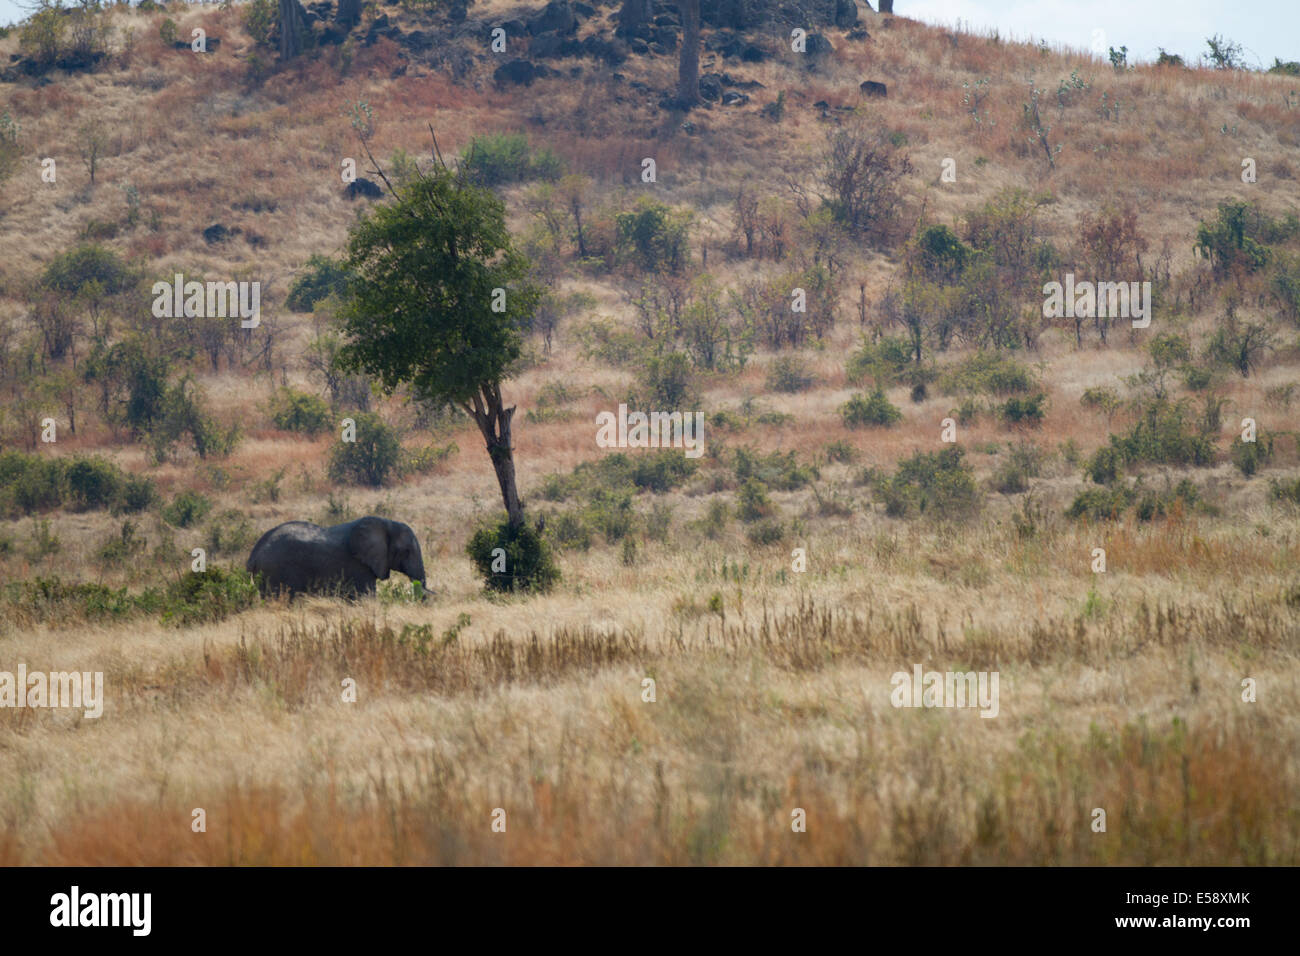 Elephant, Tanzania Stock Photo